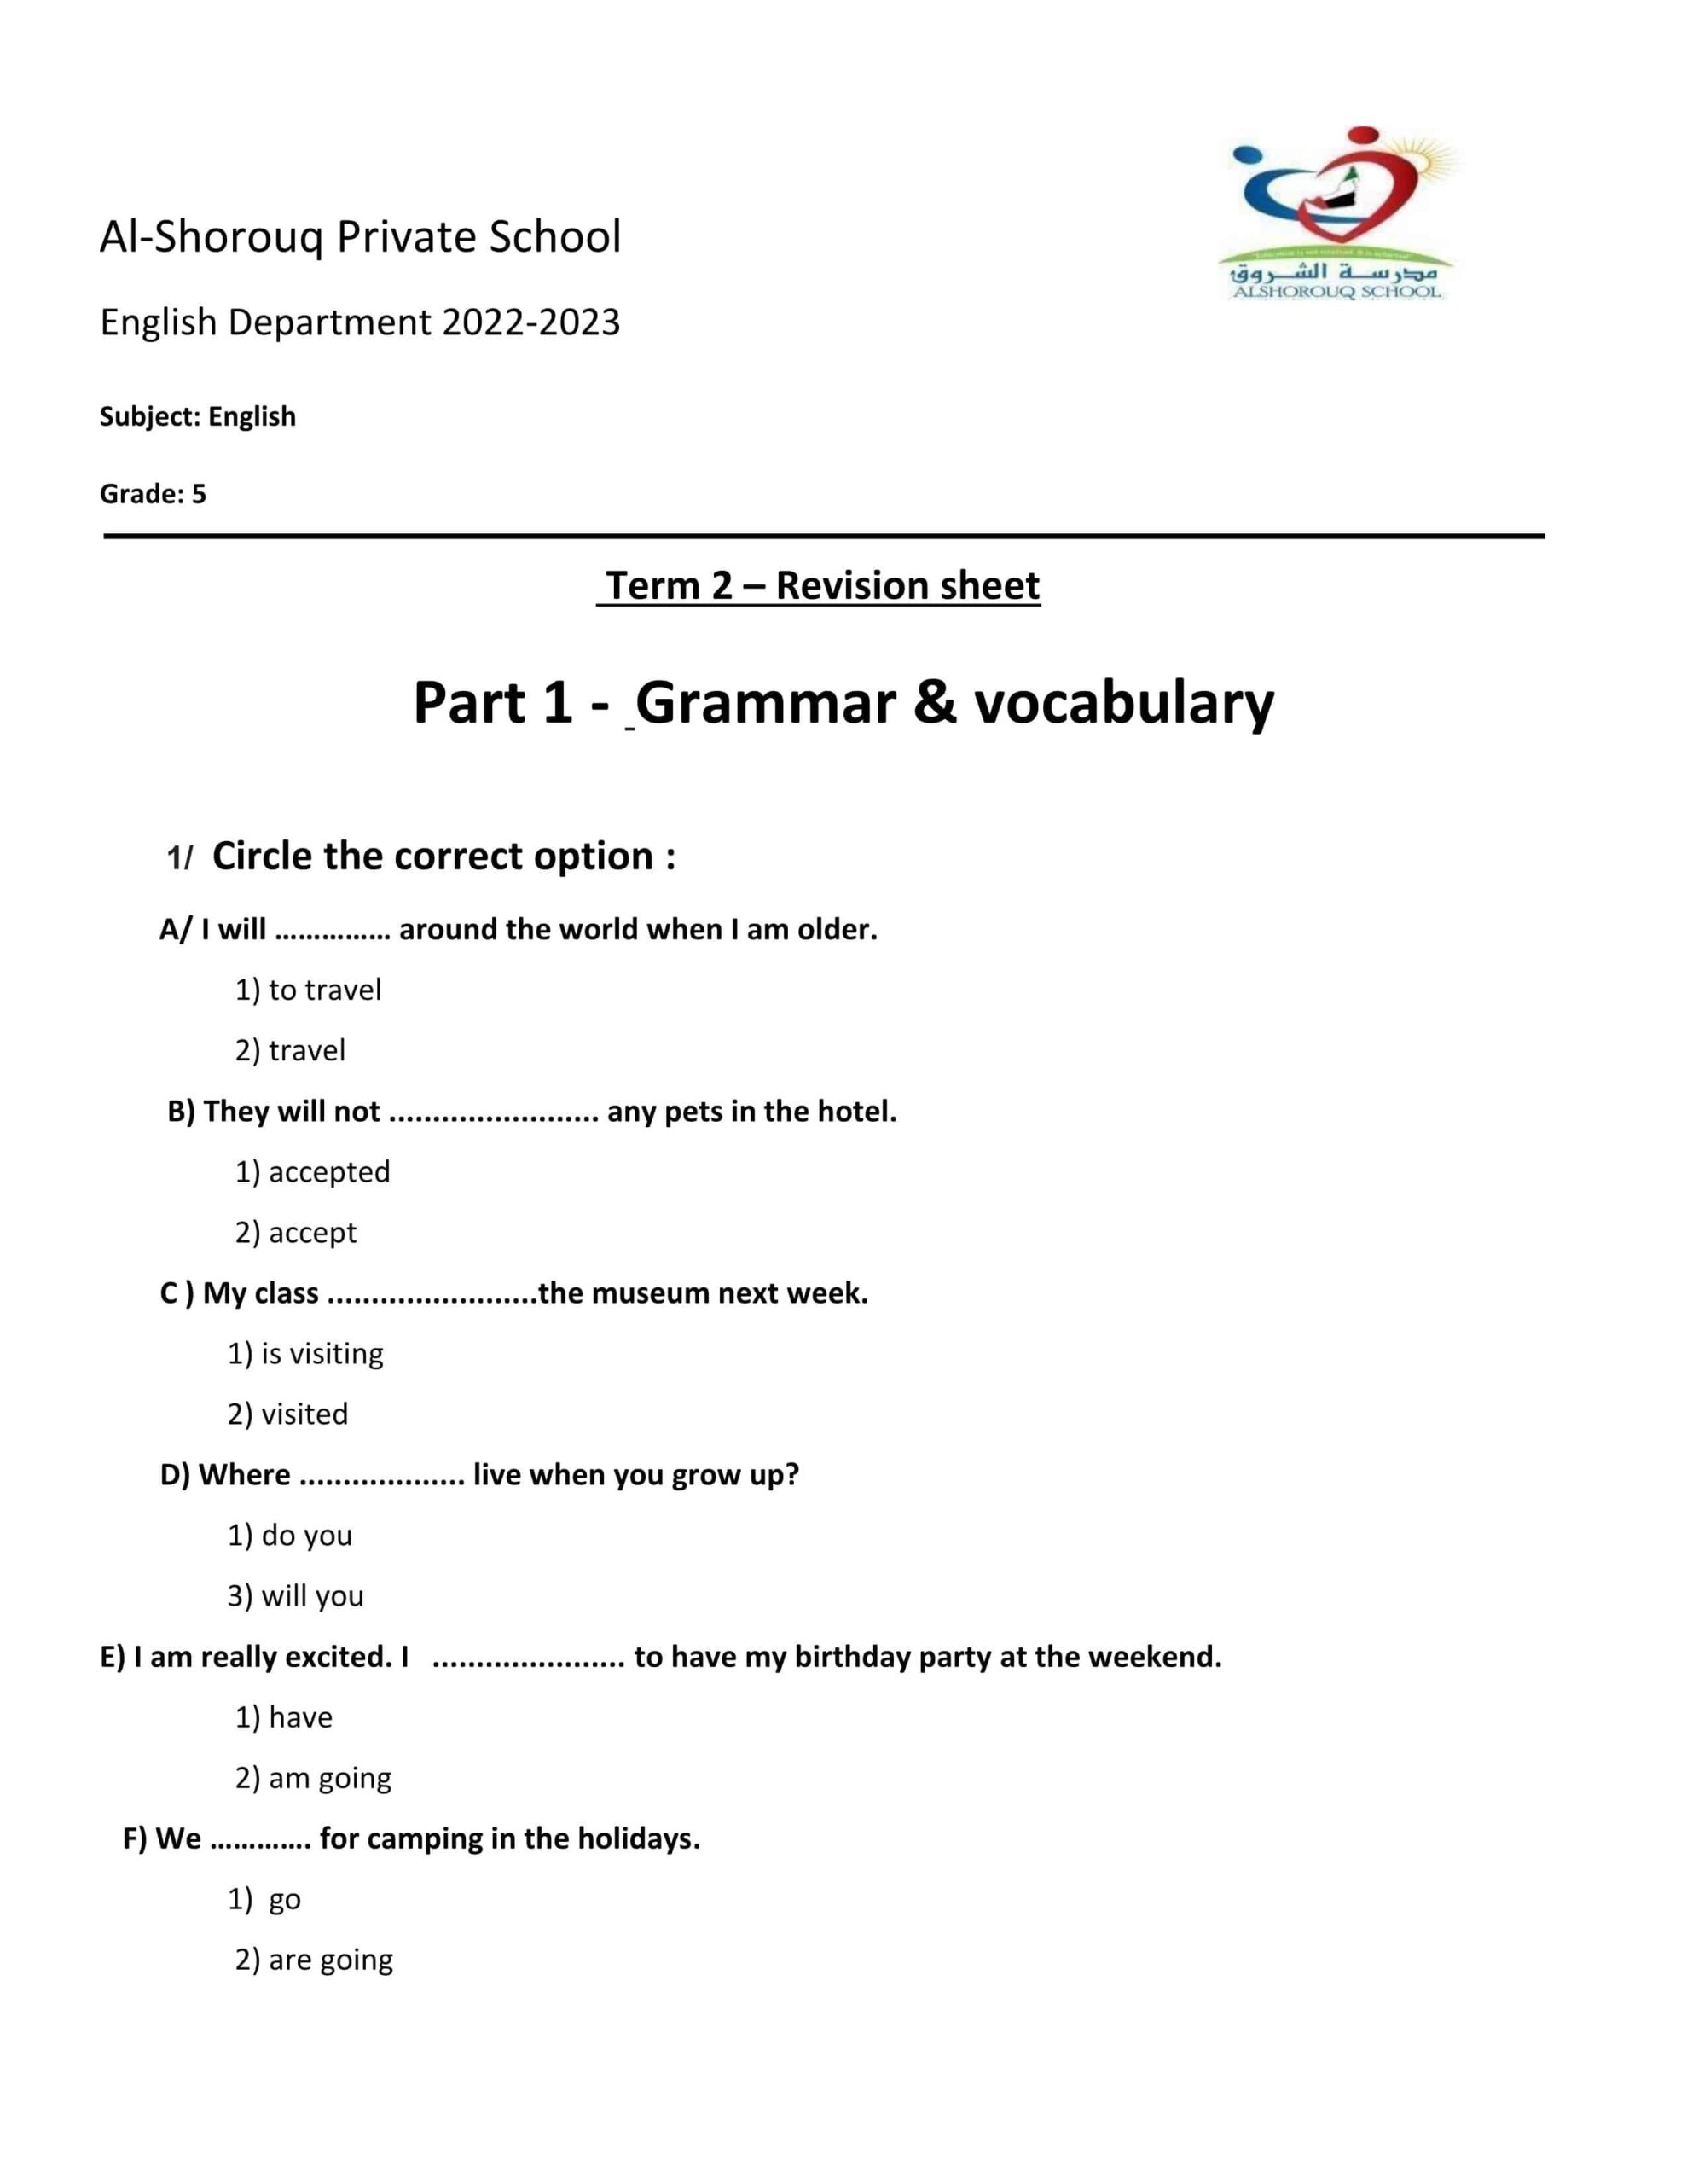 مراجعة Grammar & vocabulary اللغة الإنجليزية الصف الخامس